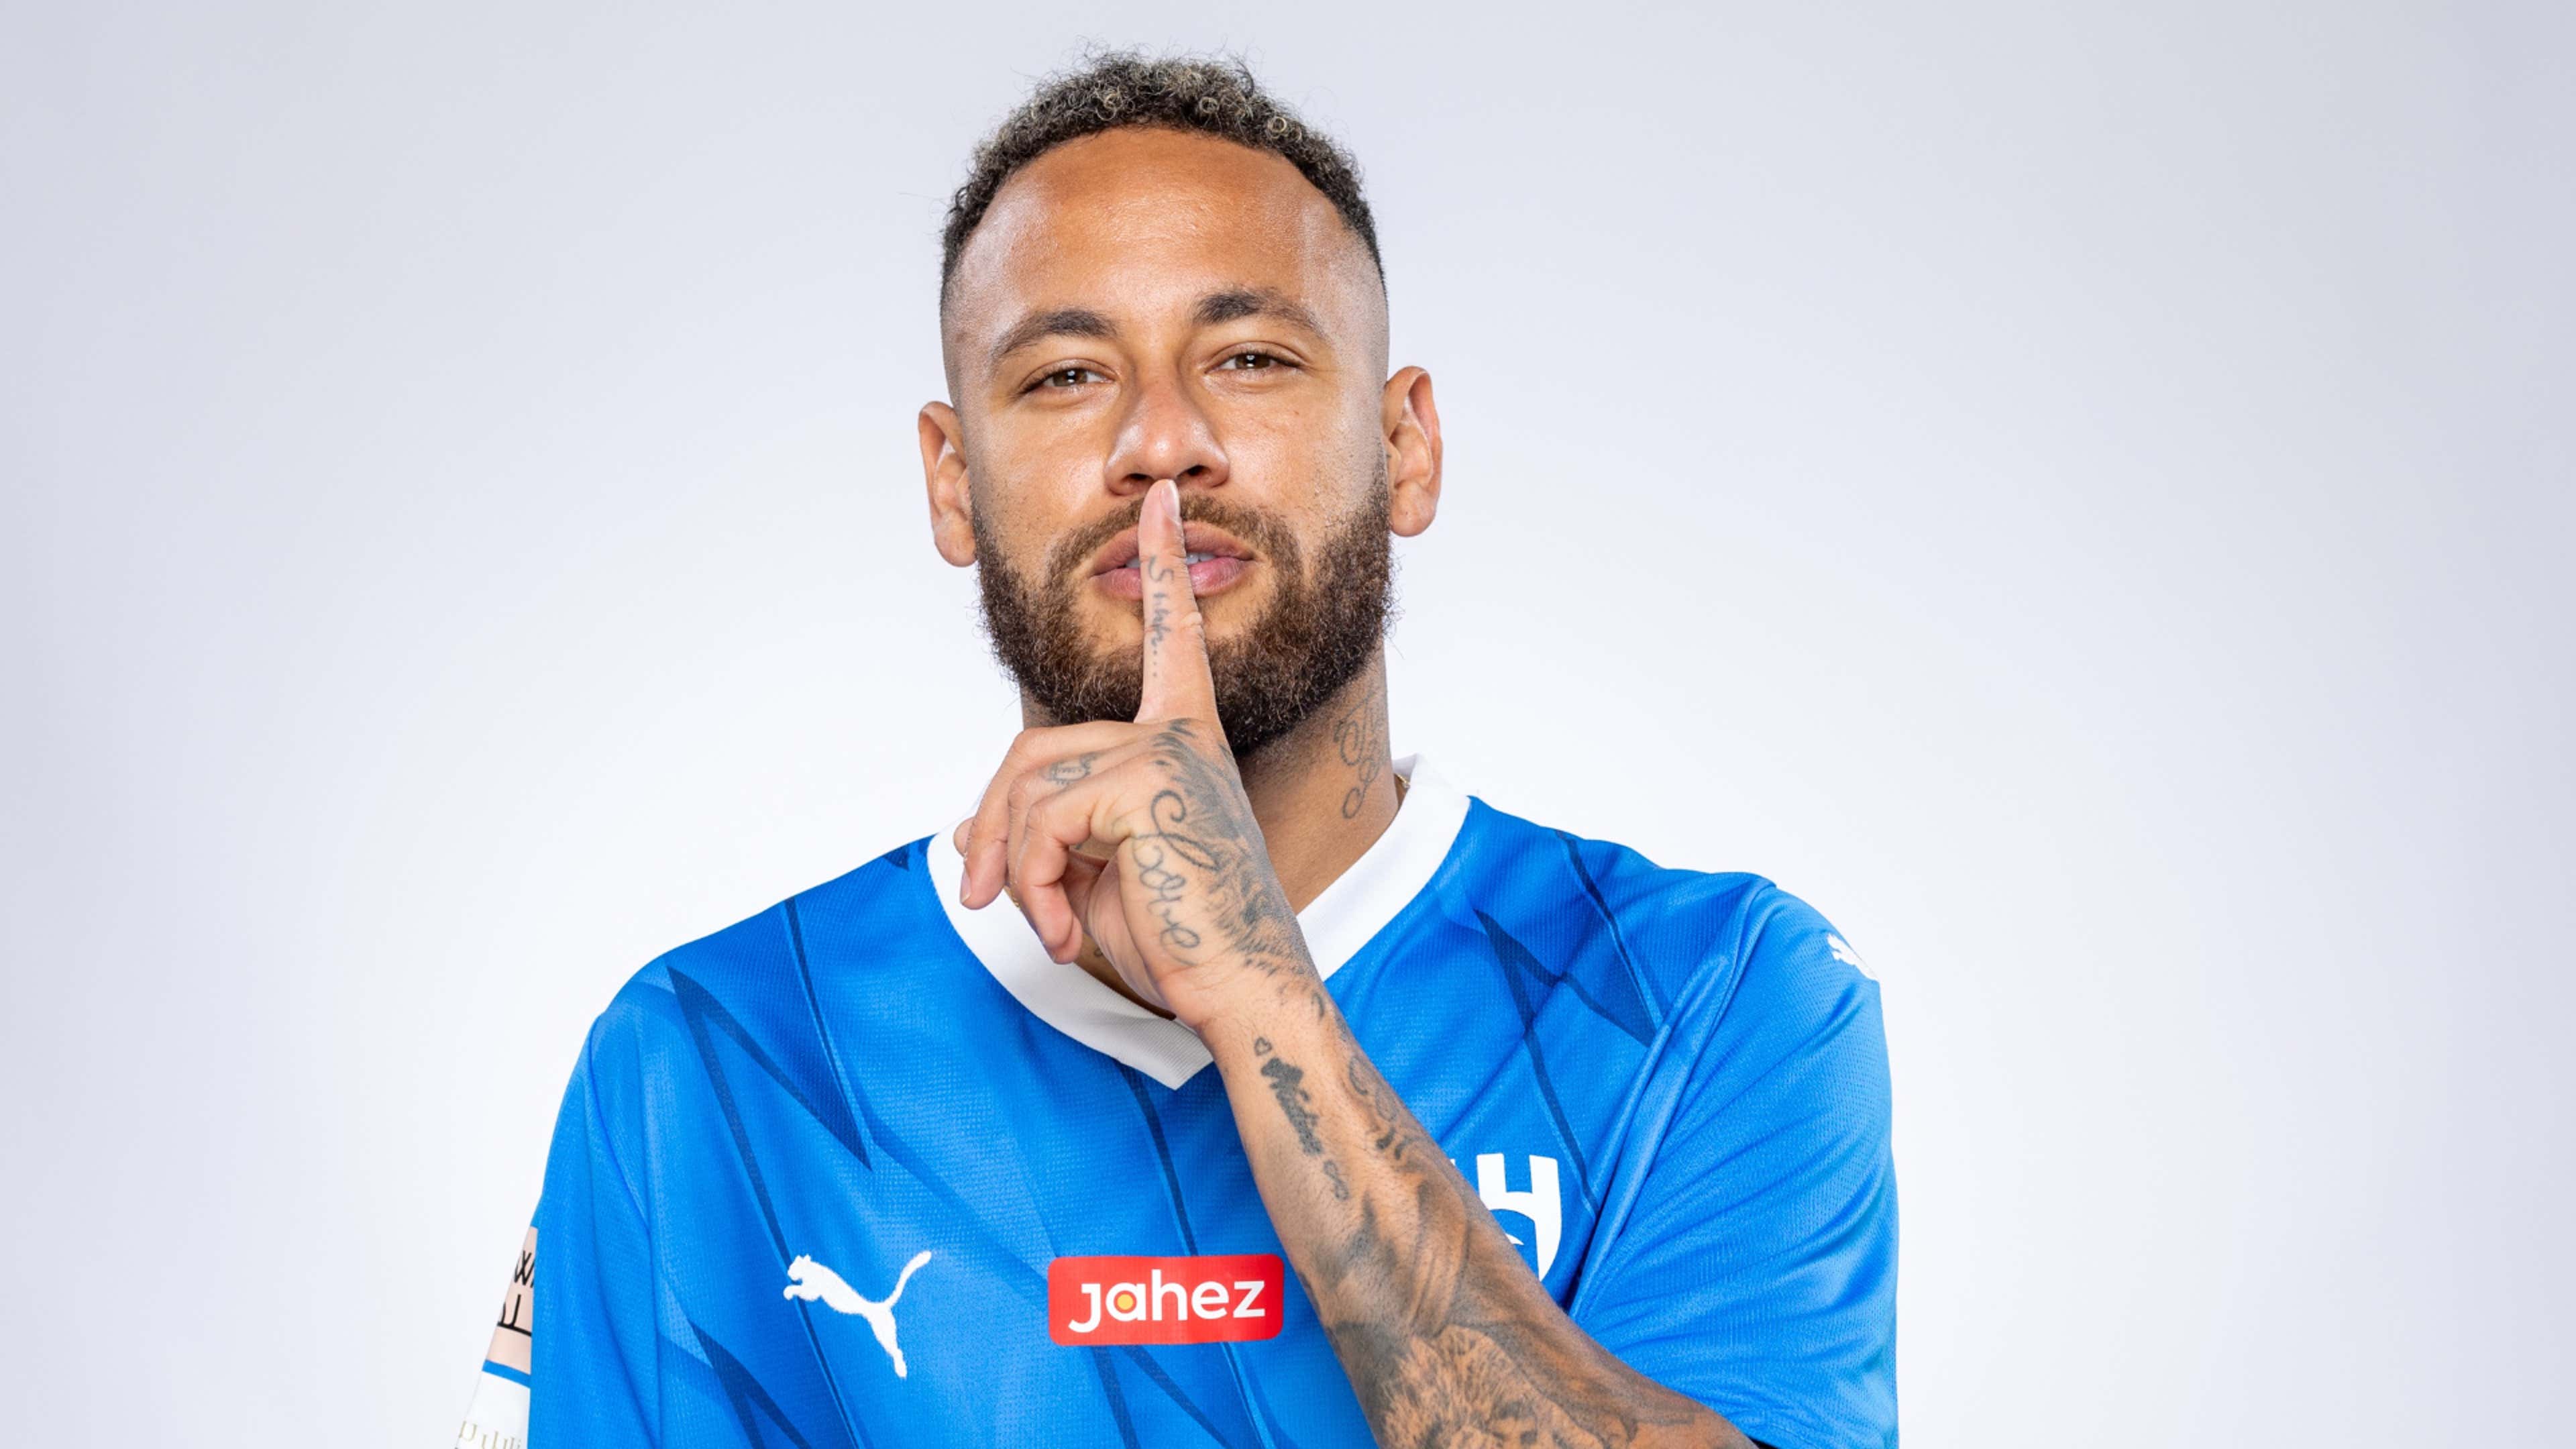 Quem vai jogar com Neymar no Al-Hilal?